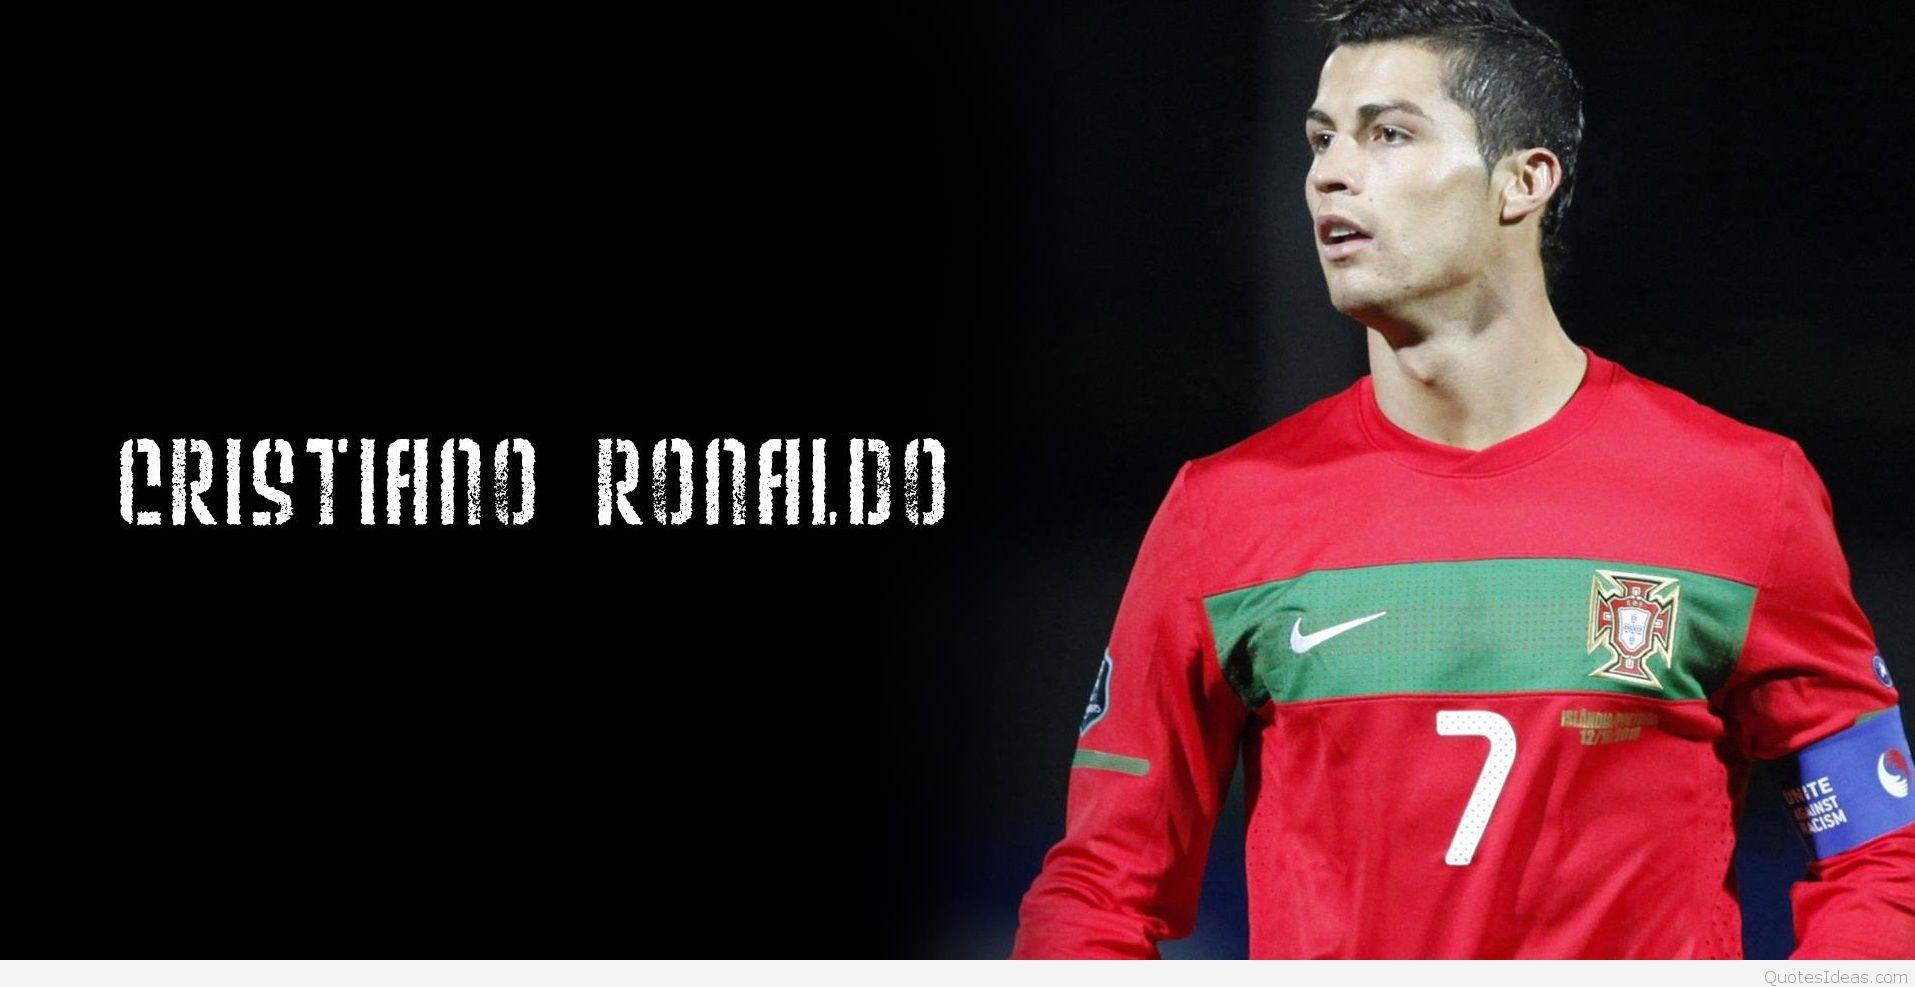 Inspirational Cristiano Ronaldo Background Quotes Image